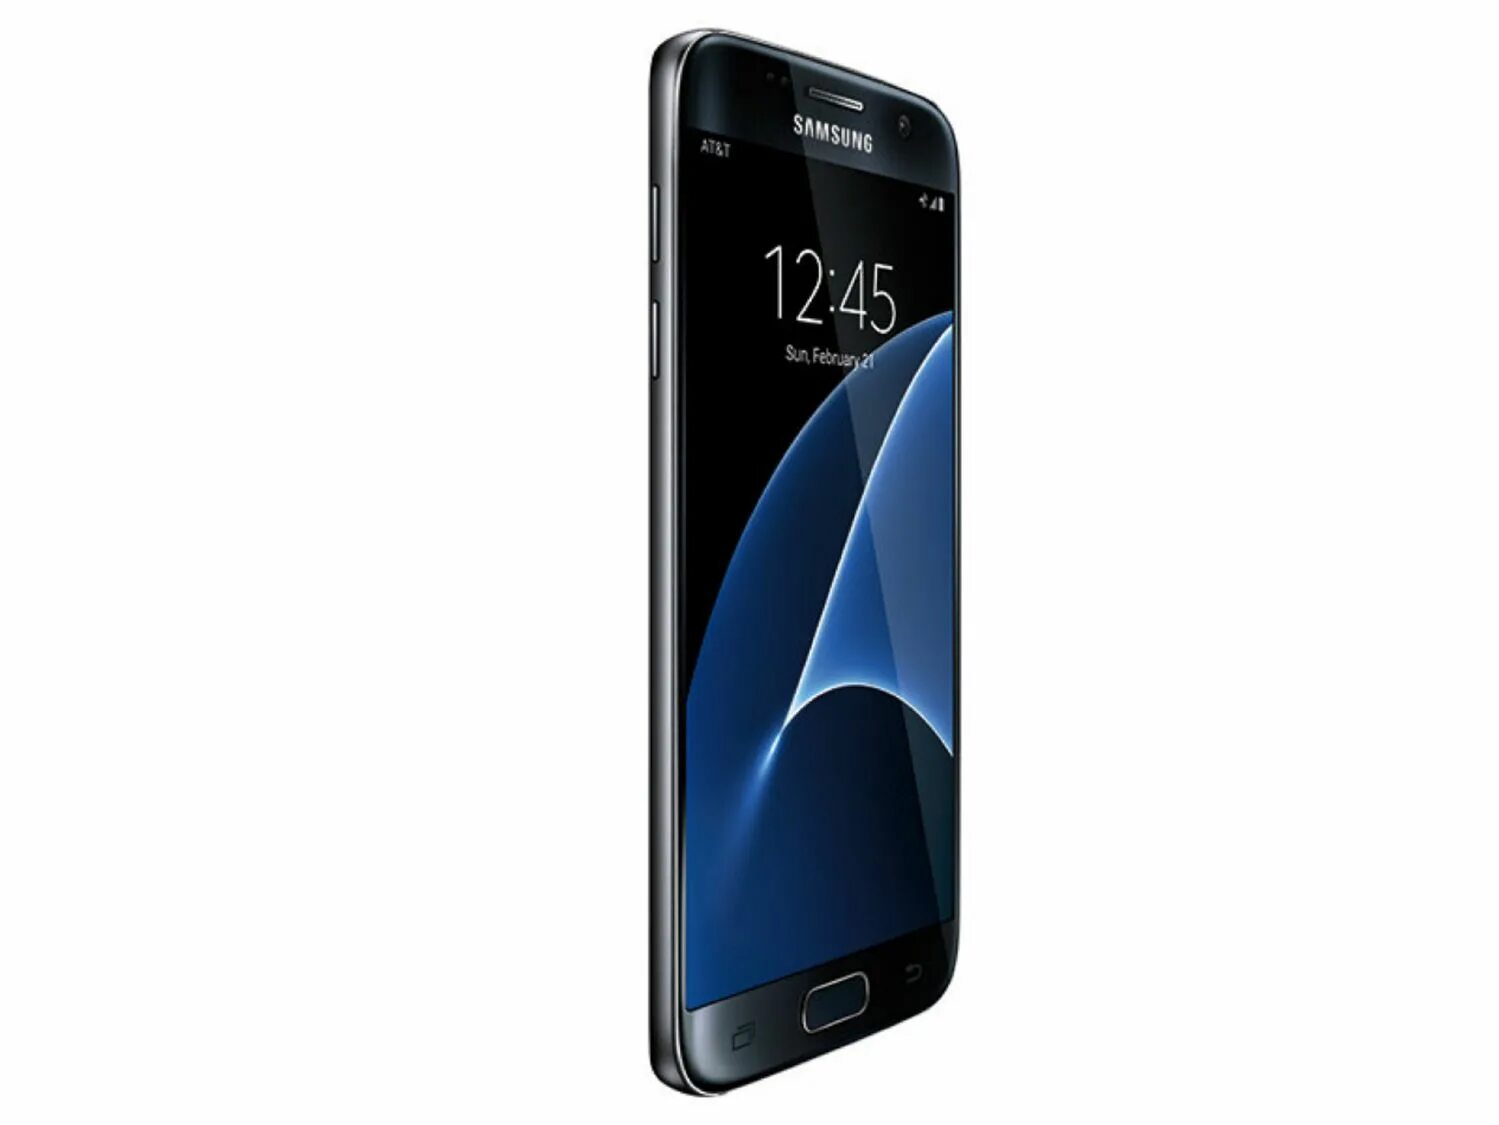 Samsung Galaxy s7 32gb. Samsung Galaxy s7 32gb Black. Samsung Galaxy s7 SM g930f 32gb. Samsung Galaxy s7 Edge 32gb.